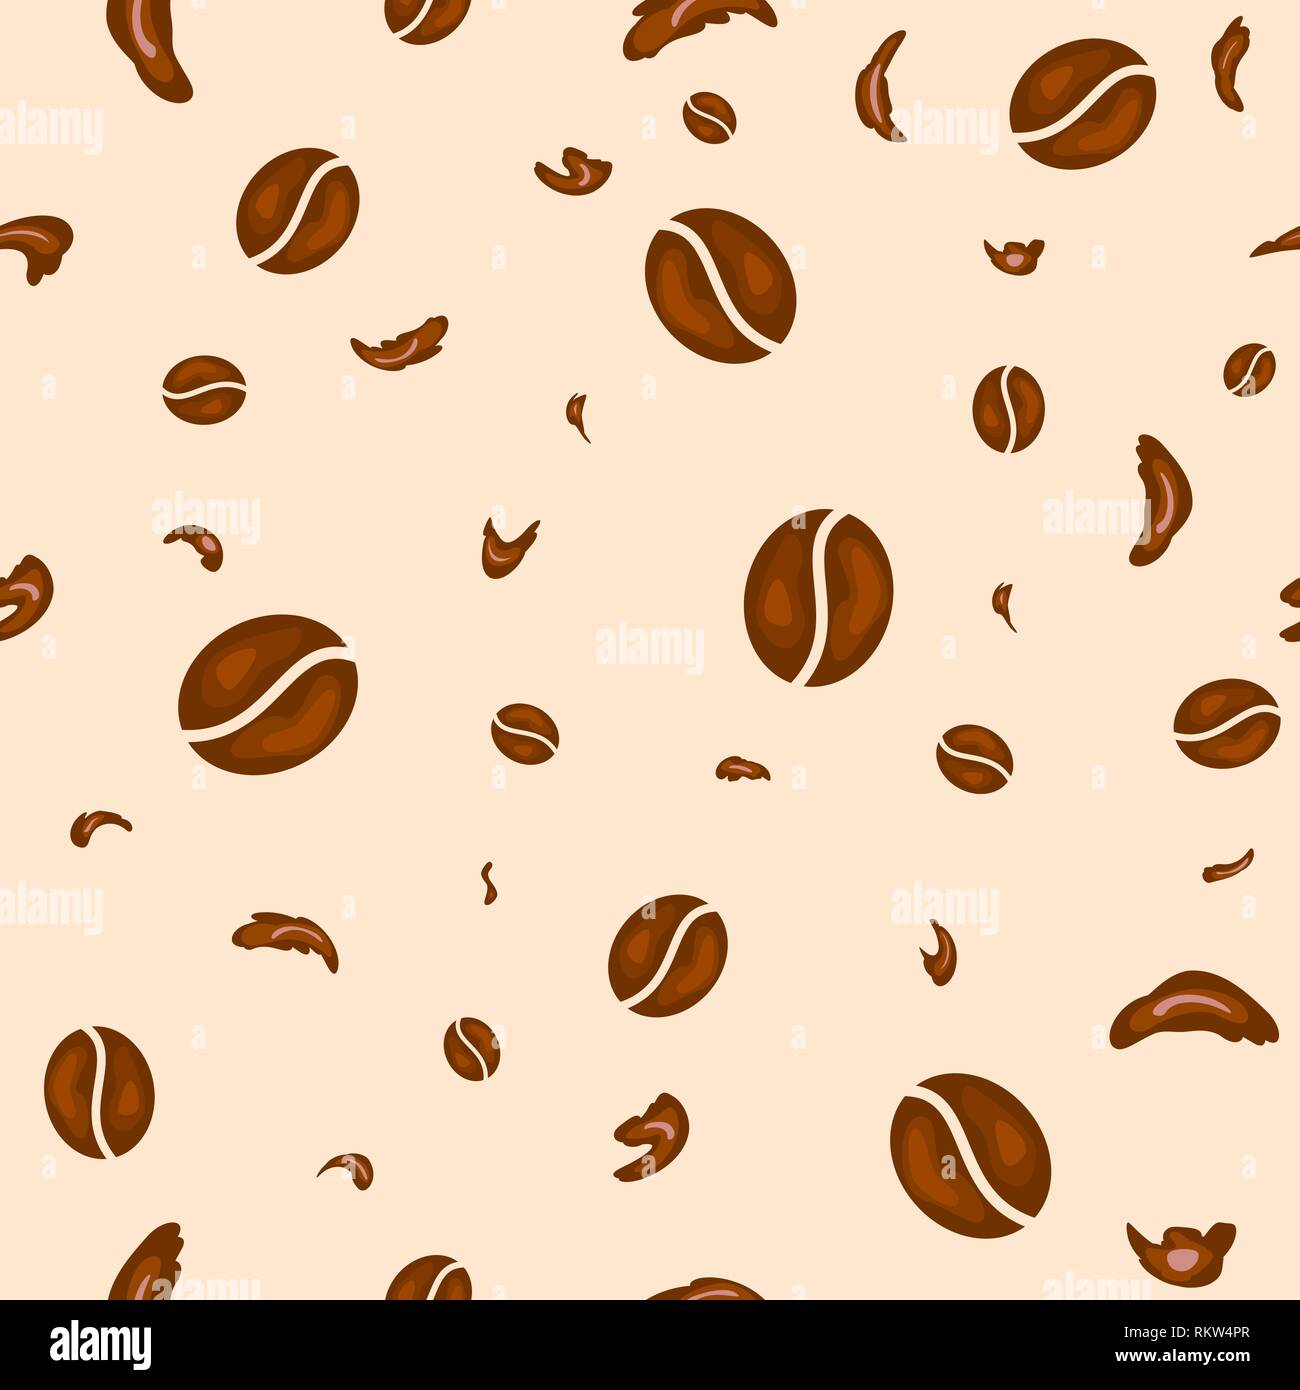 Antecedentes sin fisuras. Los granos de café y chocolate partículas sobre un fondo de color beige claro. Resumen Antecedentes de granos de café y las virutas de chocolate. Ilustración del Vector